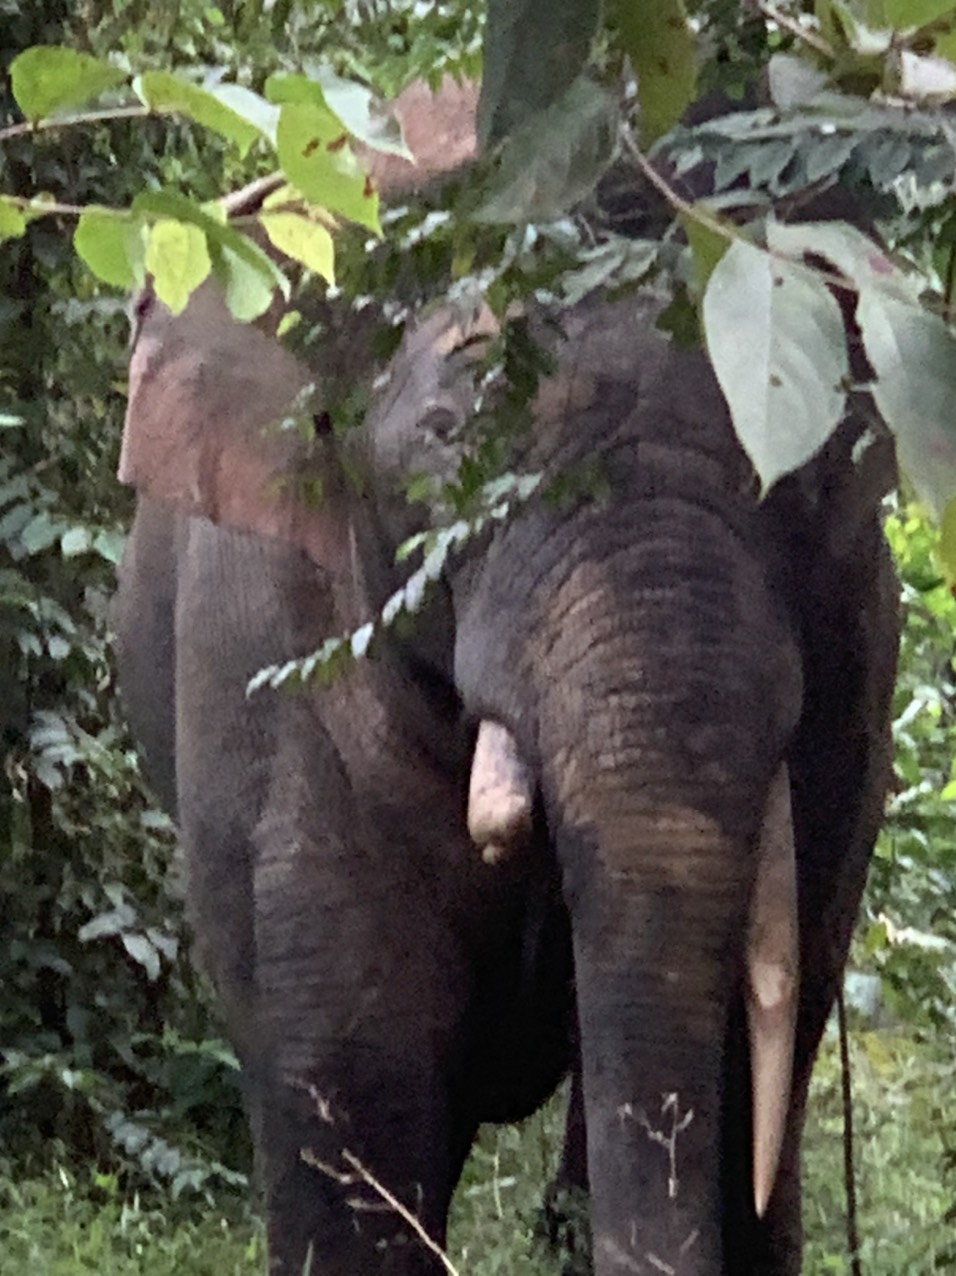 Tuần lễ Bảo tồn voi và Hội thảo đánh giá Chương trình thí điểm bảo tồn voi theo hướng chung sống hài hòa tại tỉnh Đồng Nai 